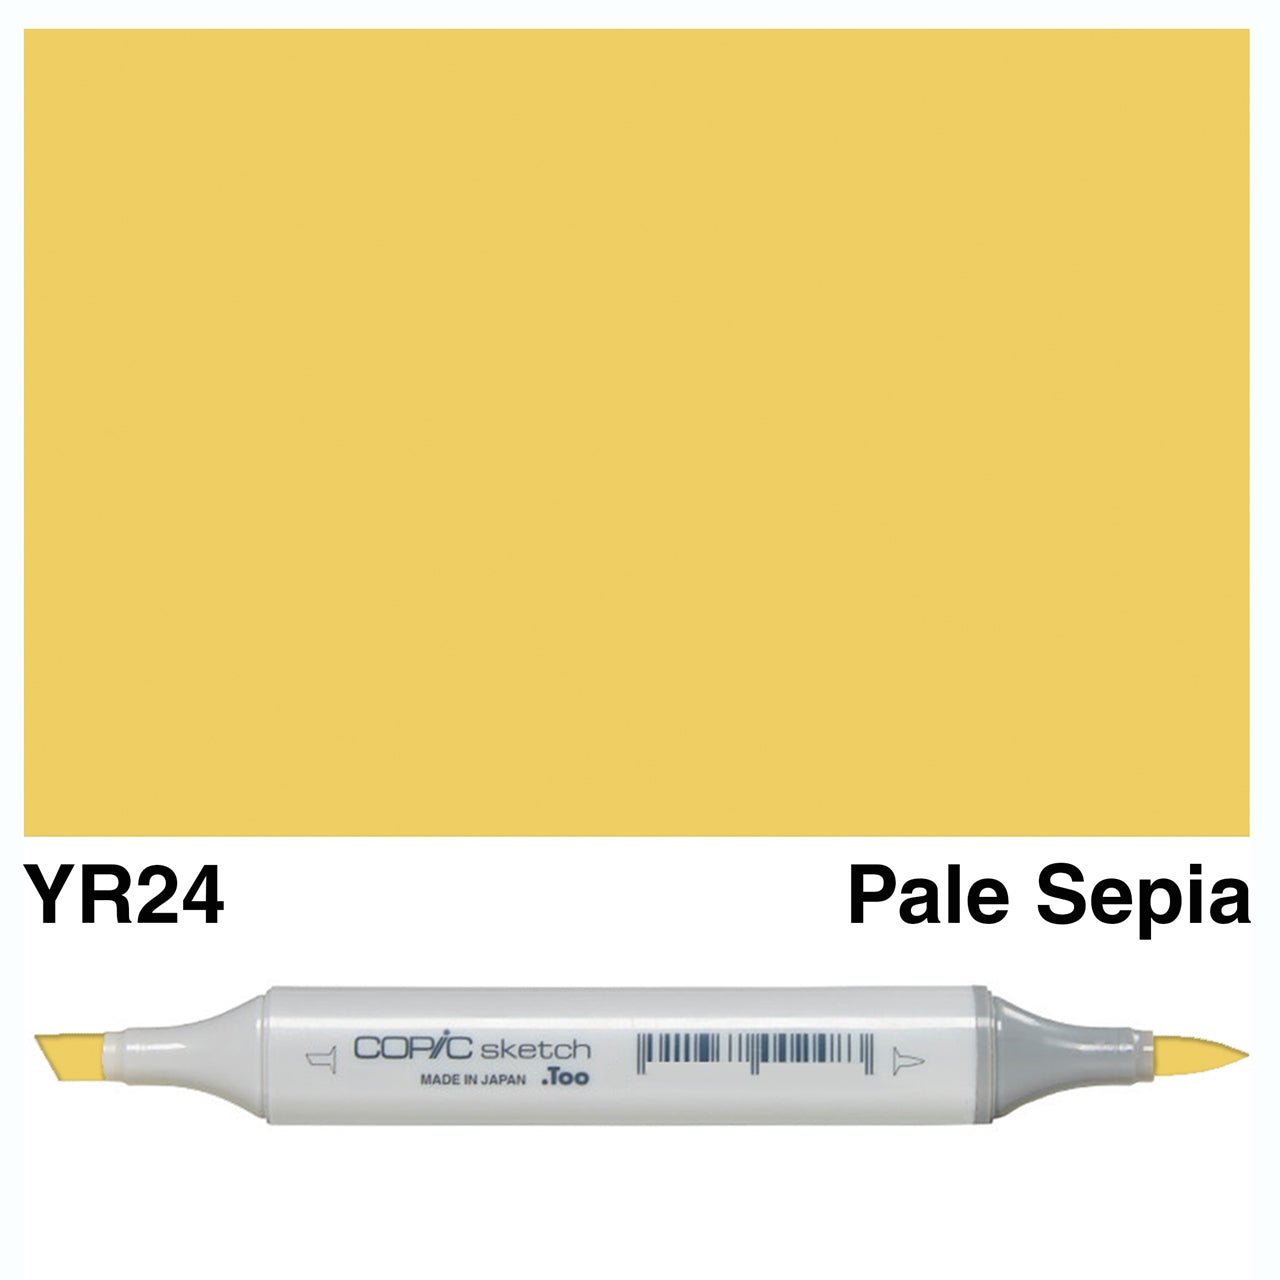 Copic Sketch YR24 Pale Sepia - theartshop.com.au